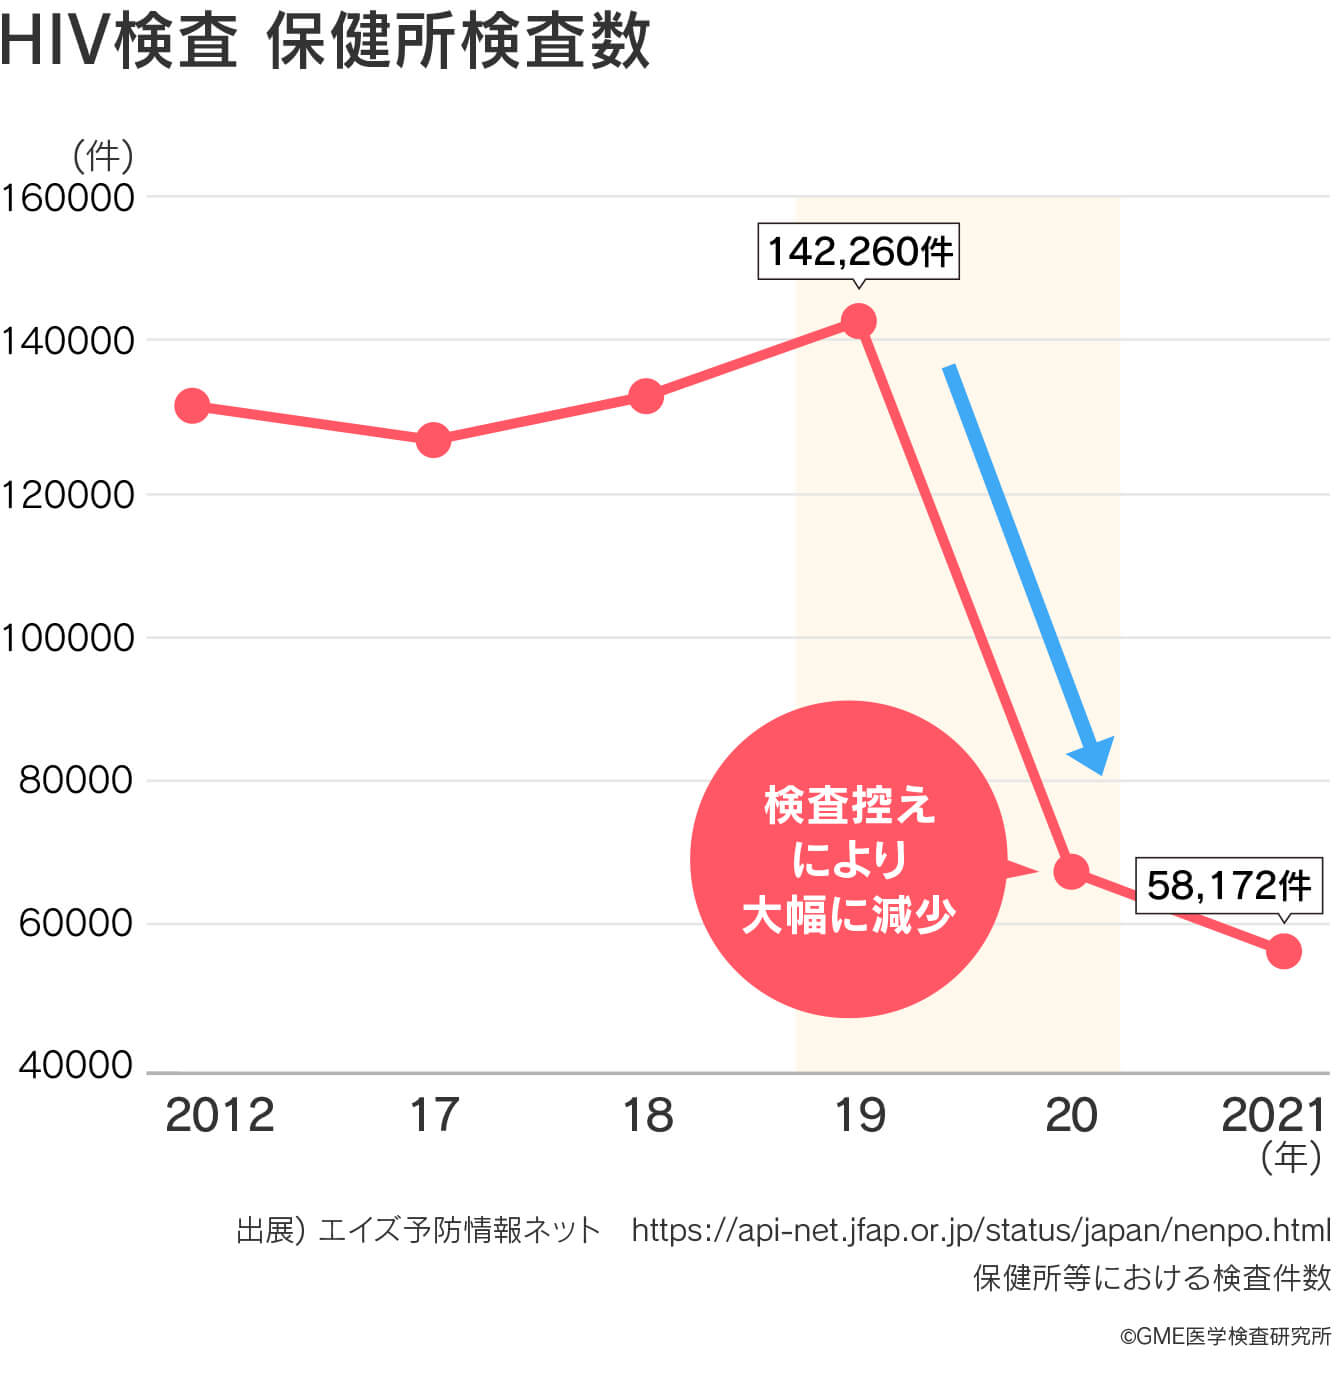 保健所でのHIV検査数は検査控えにより大幅に減少